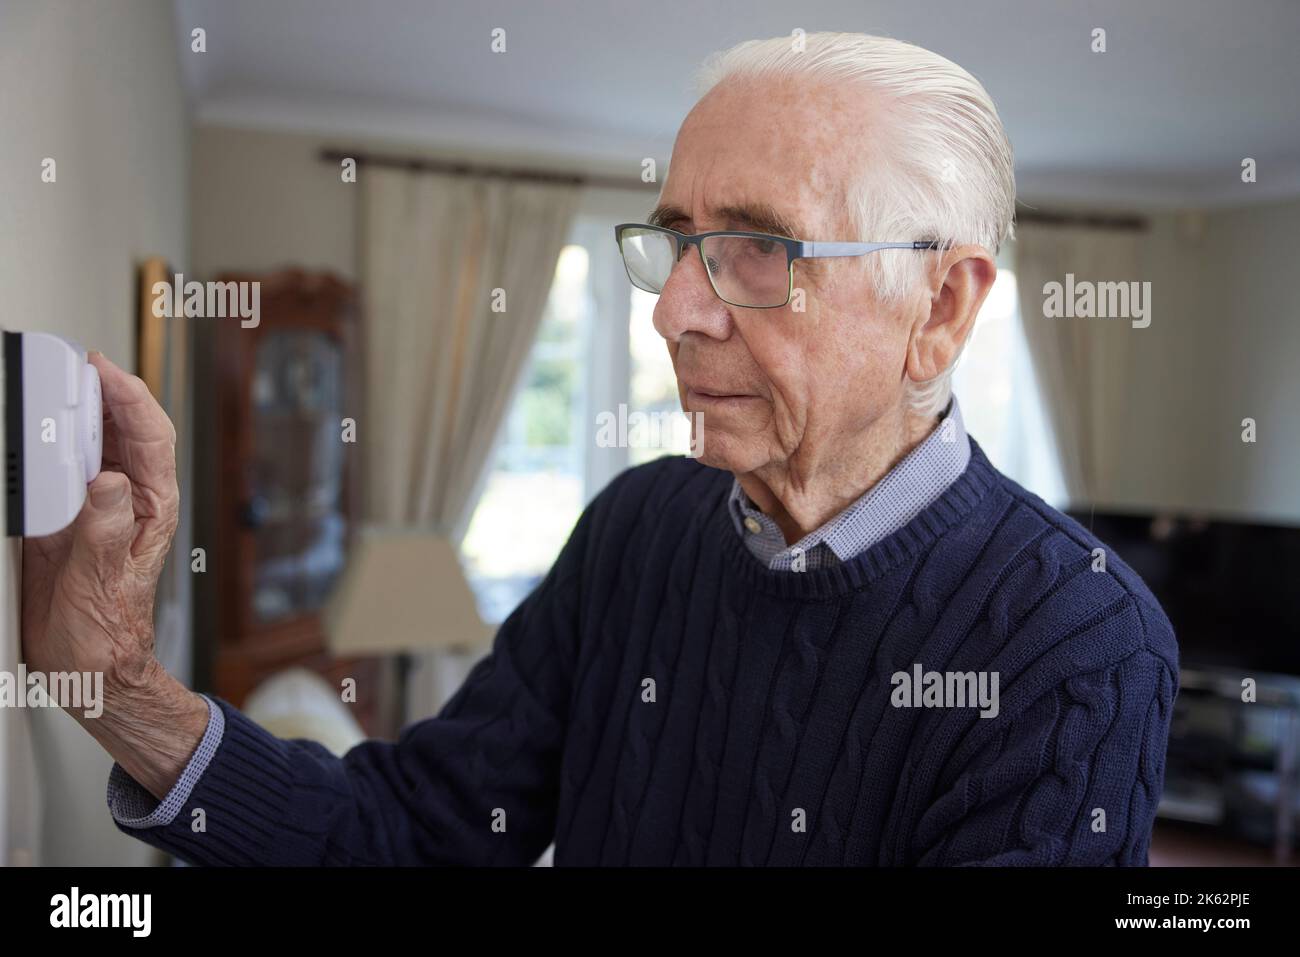 Hombre Senior preocupado Derronando el Termostato de Calefacción Central en el Hogar en Crisis Energética Foto de stock